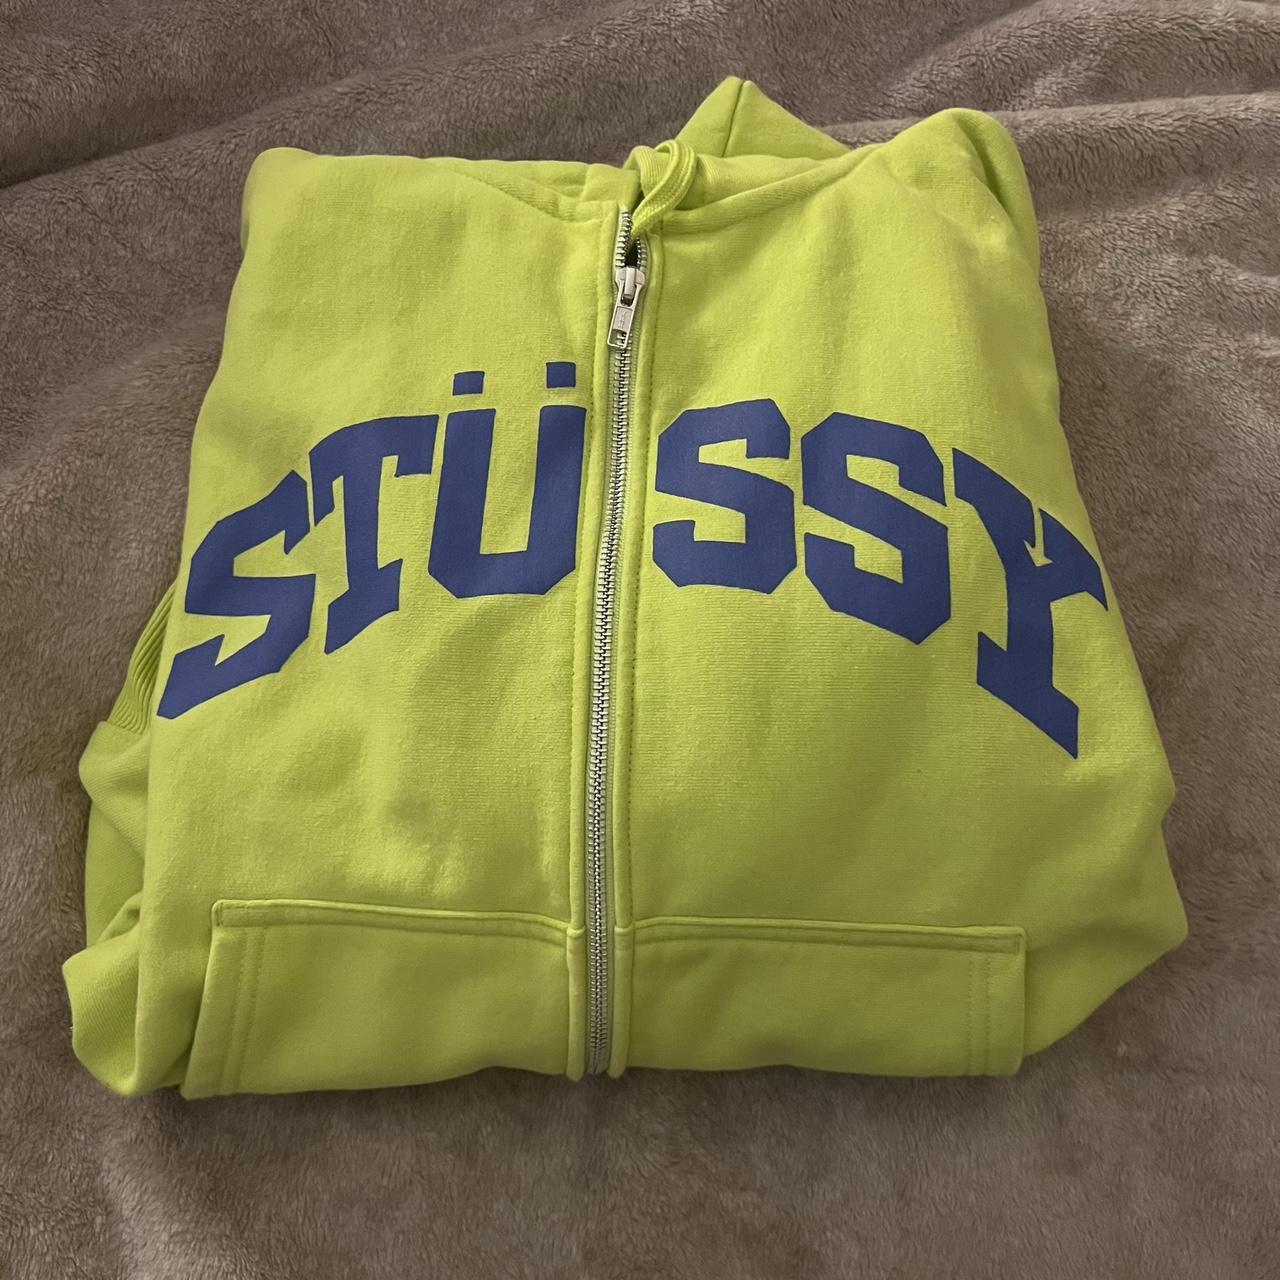 Authentic Stussy zip up hoodie -varsity type... - Depop